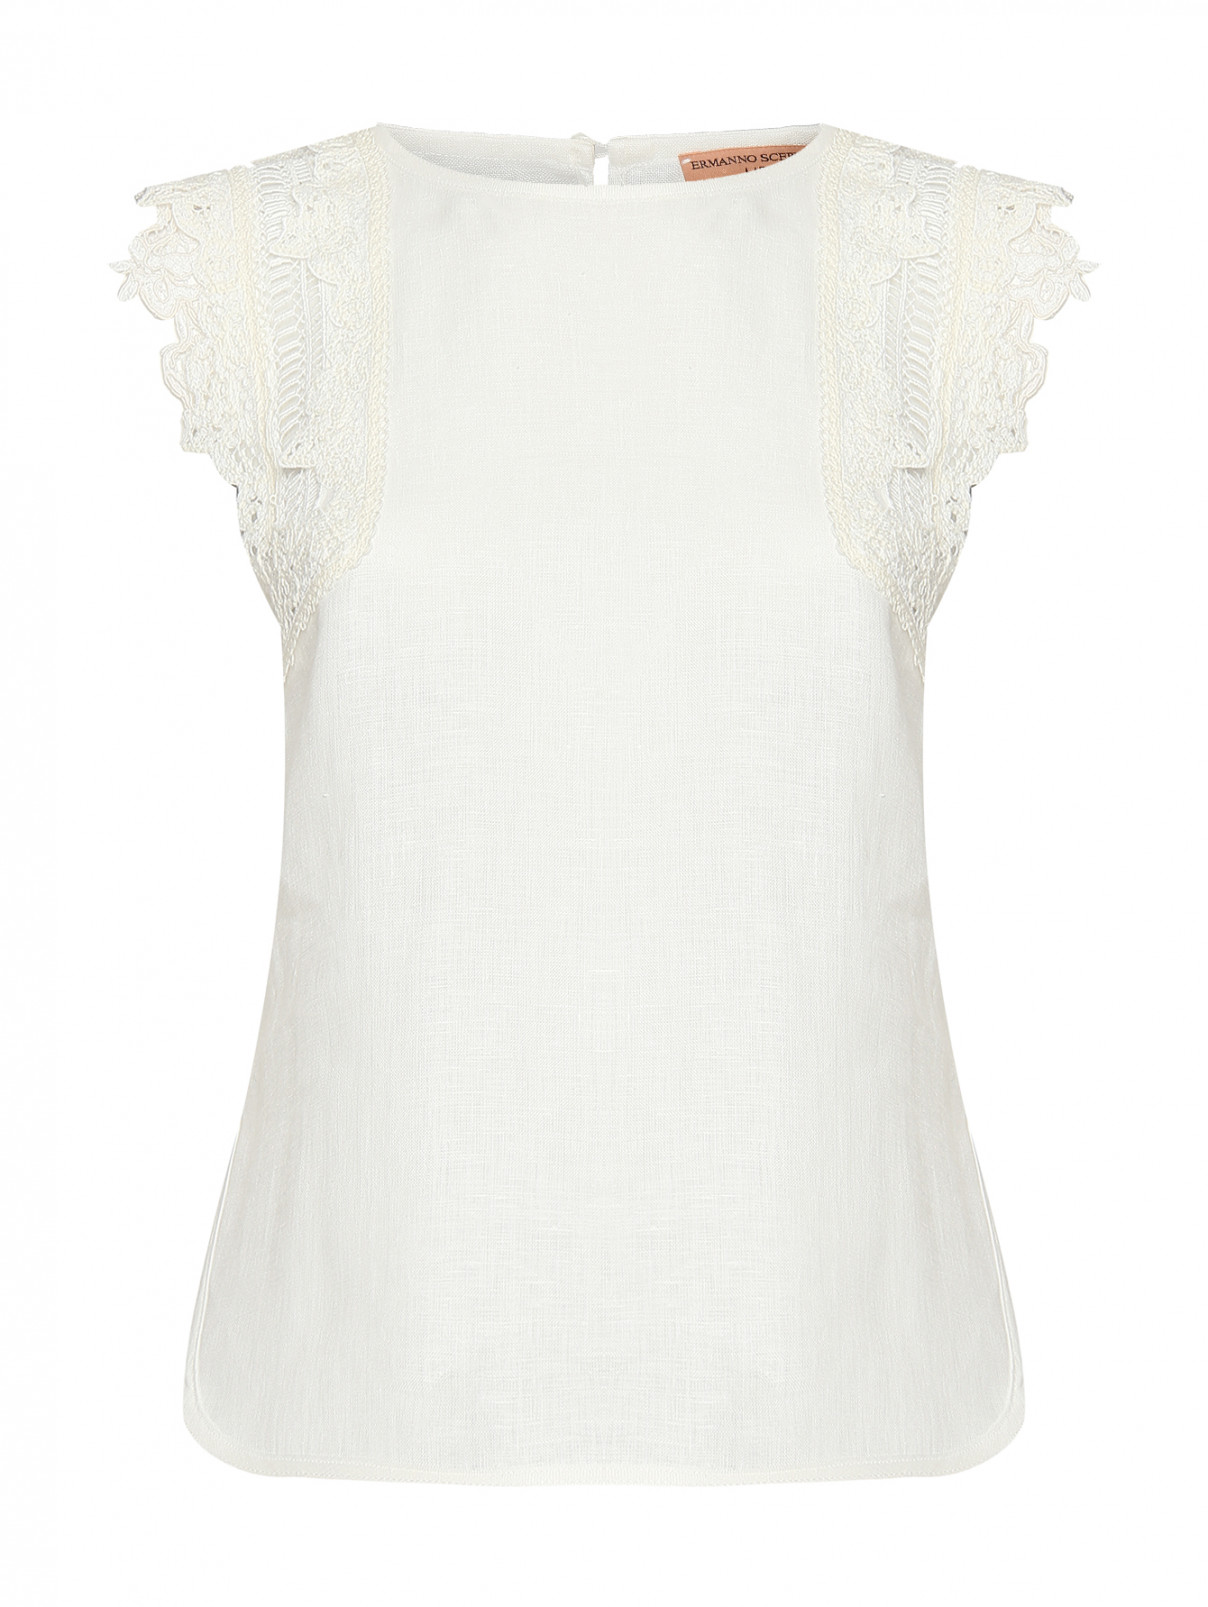 Топ из льна с декоративной вышивкой Ermanno Scervino  –  Общий вид  – Цвет:  Белый